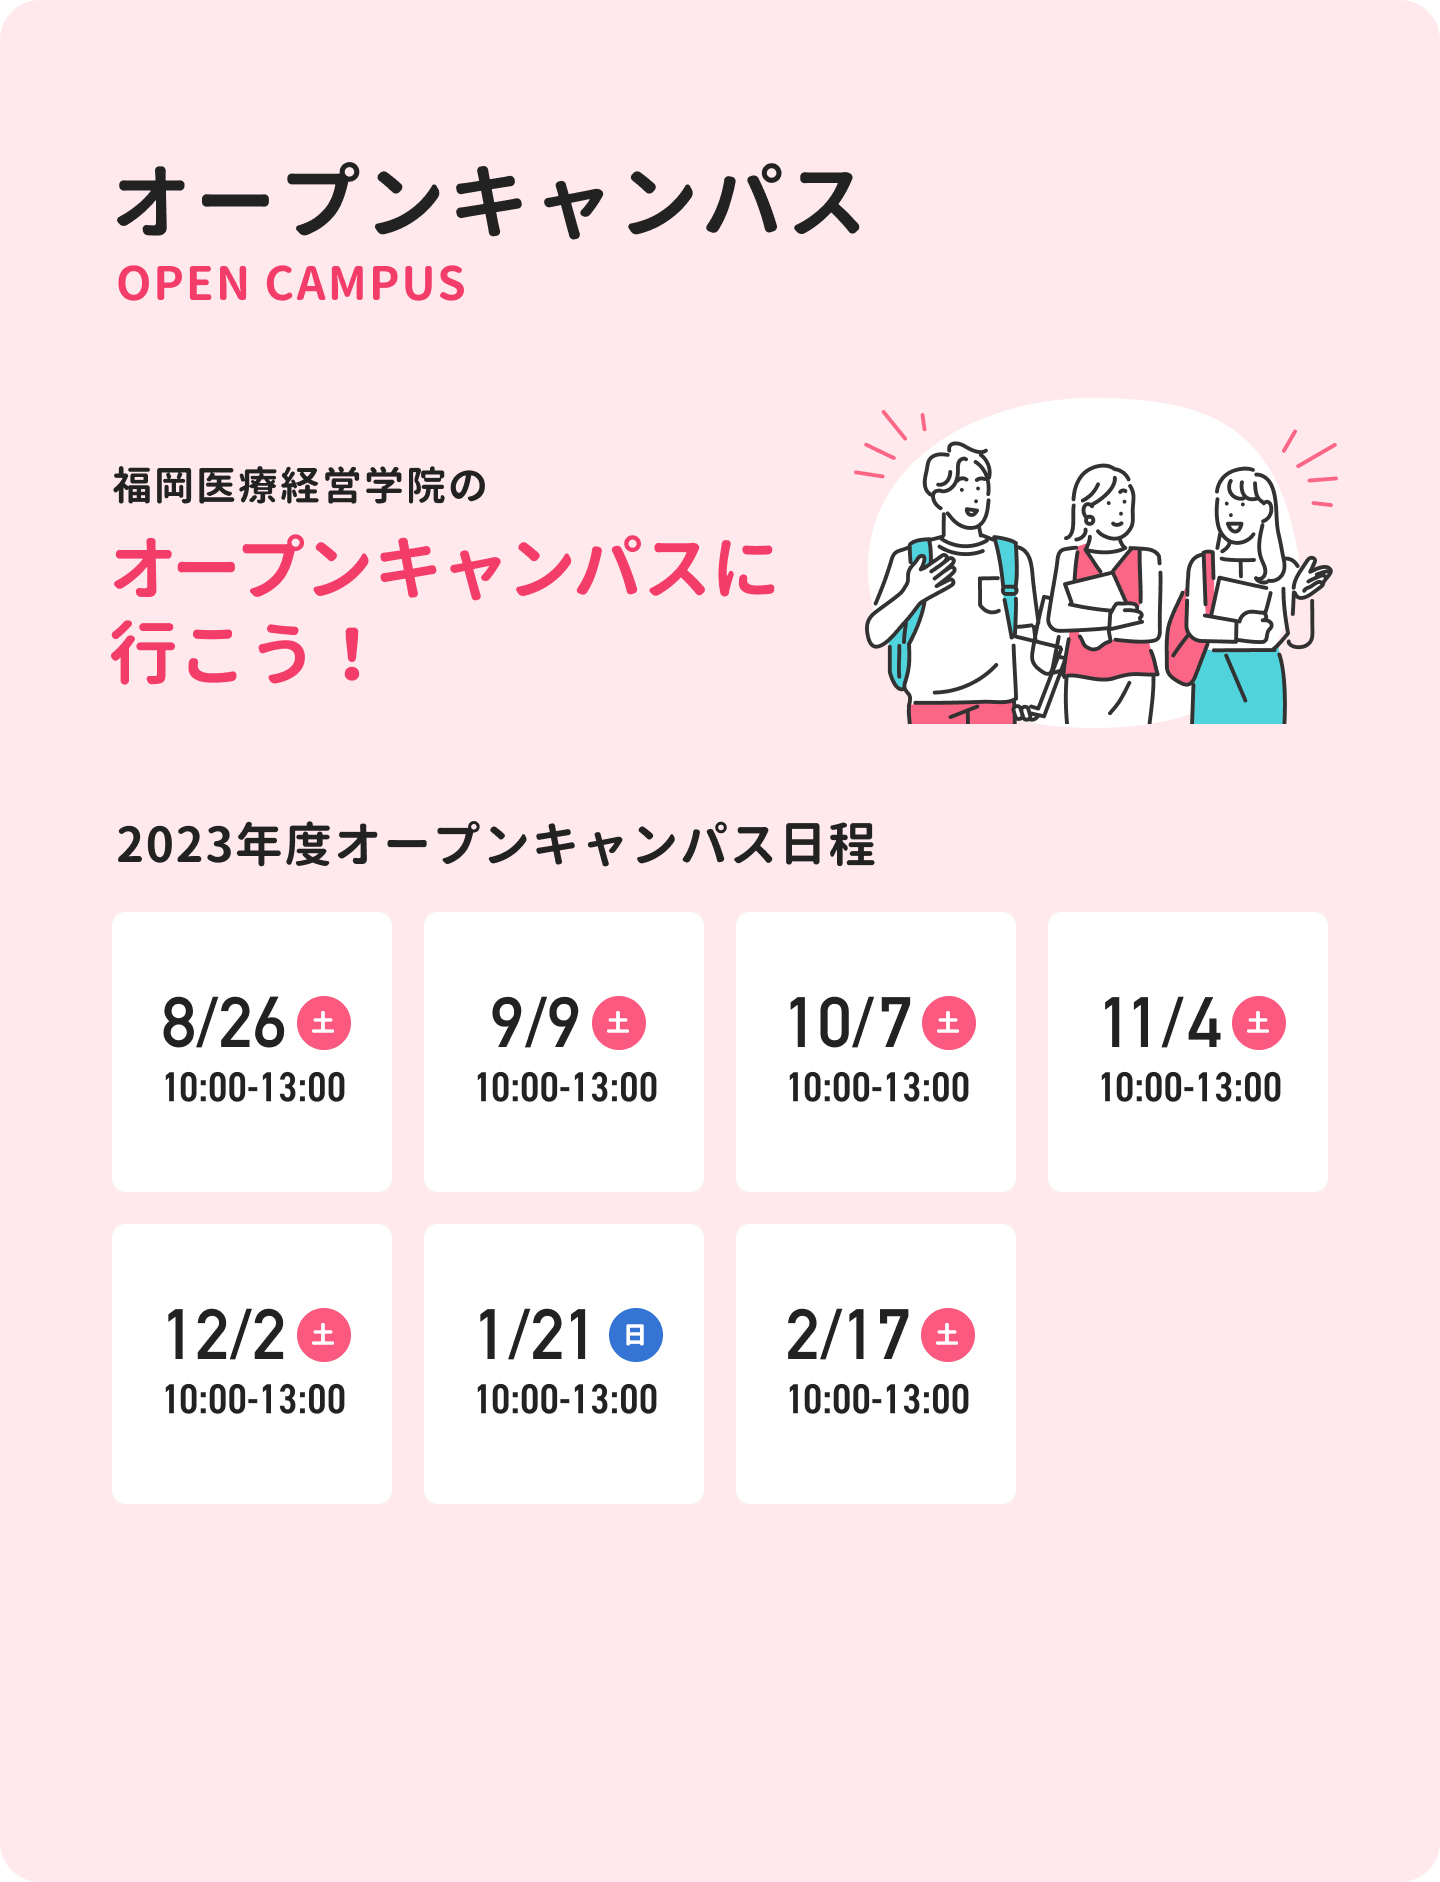 福岡医療経営学院のオープンキャンパスに行こう！